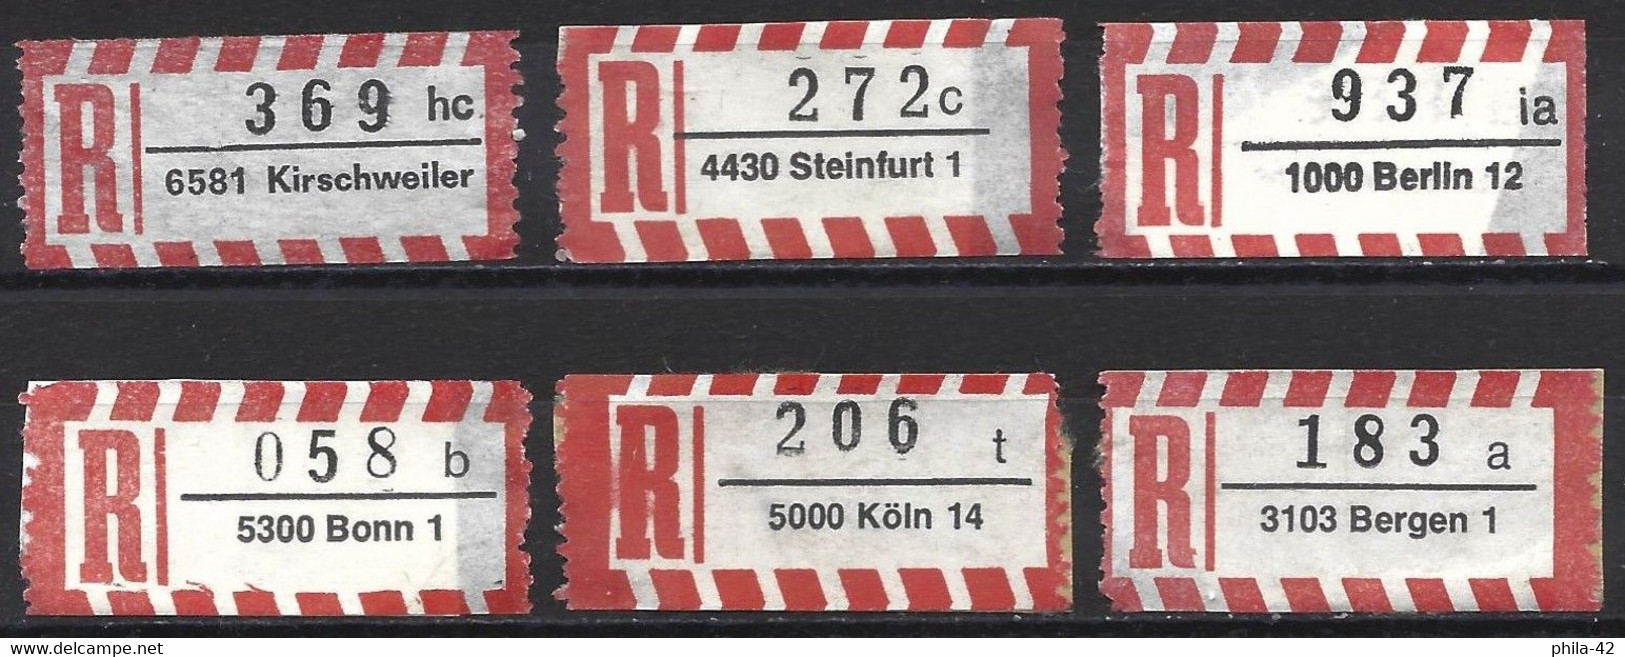 Germany FRG - Labels Registered Letter - Set 6 Labels - Etiquettes 'Recommandé' & 'Valeur Déclarée'